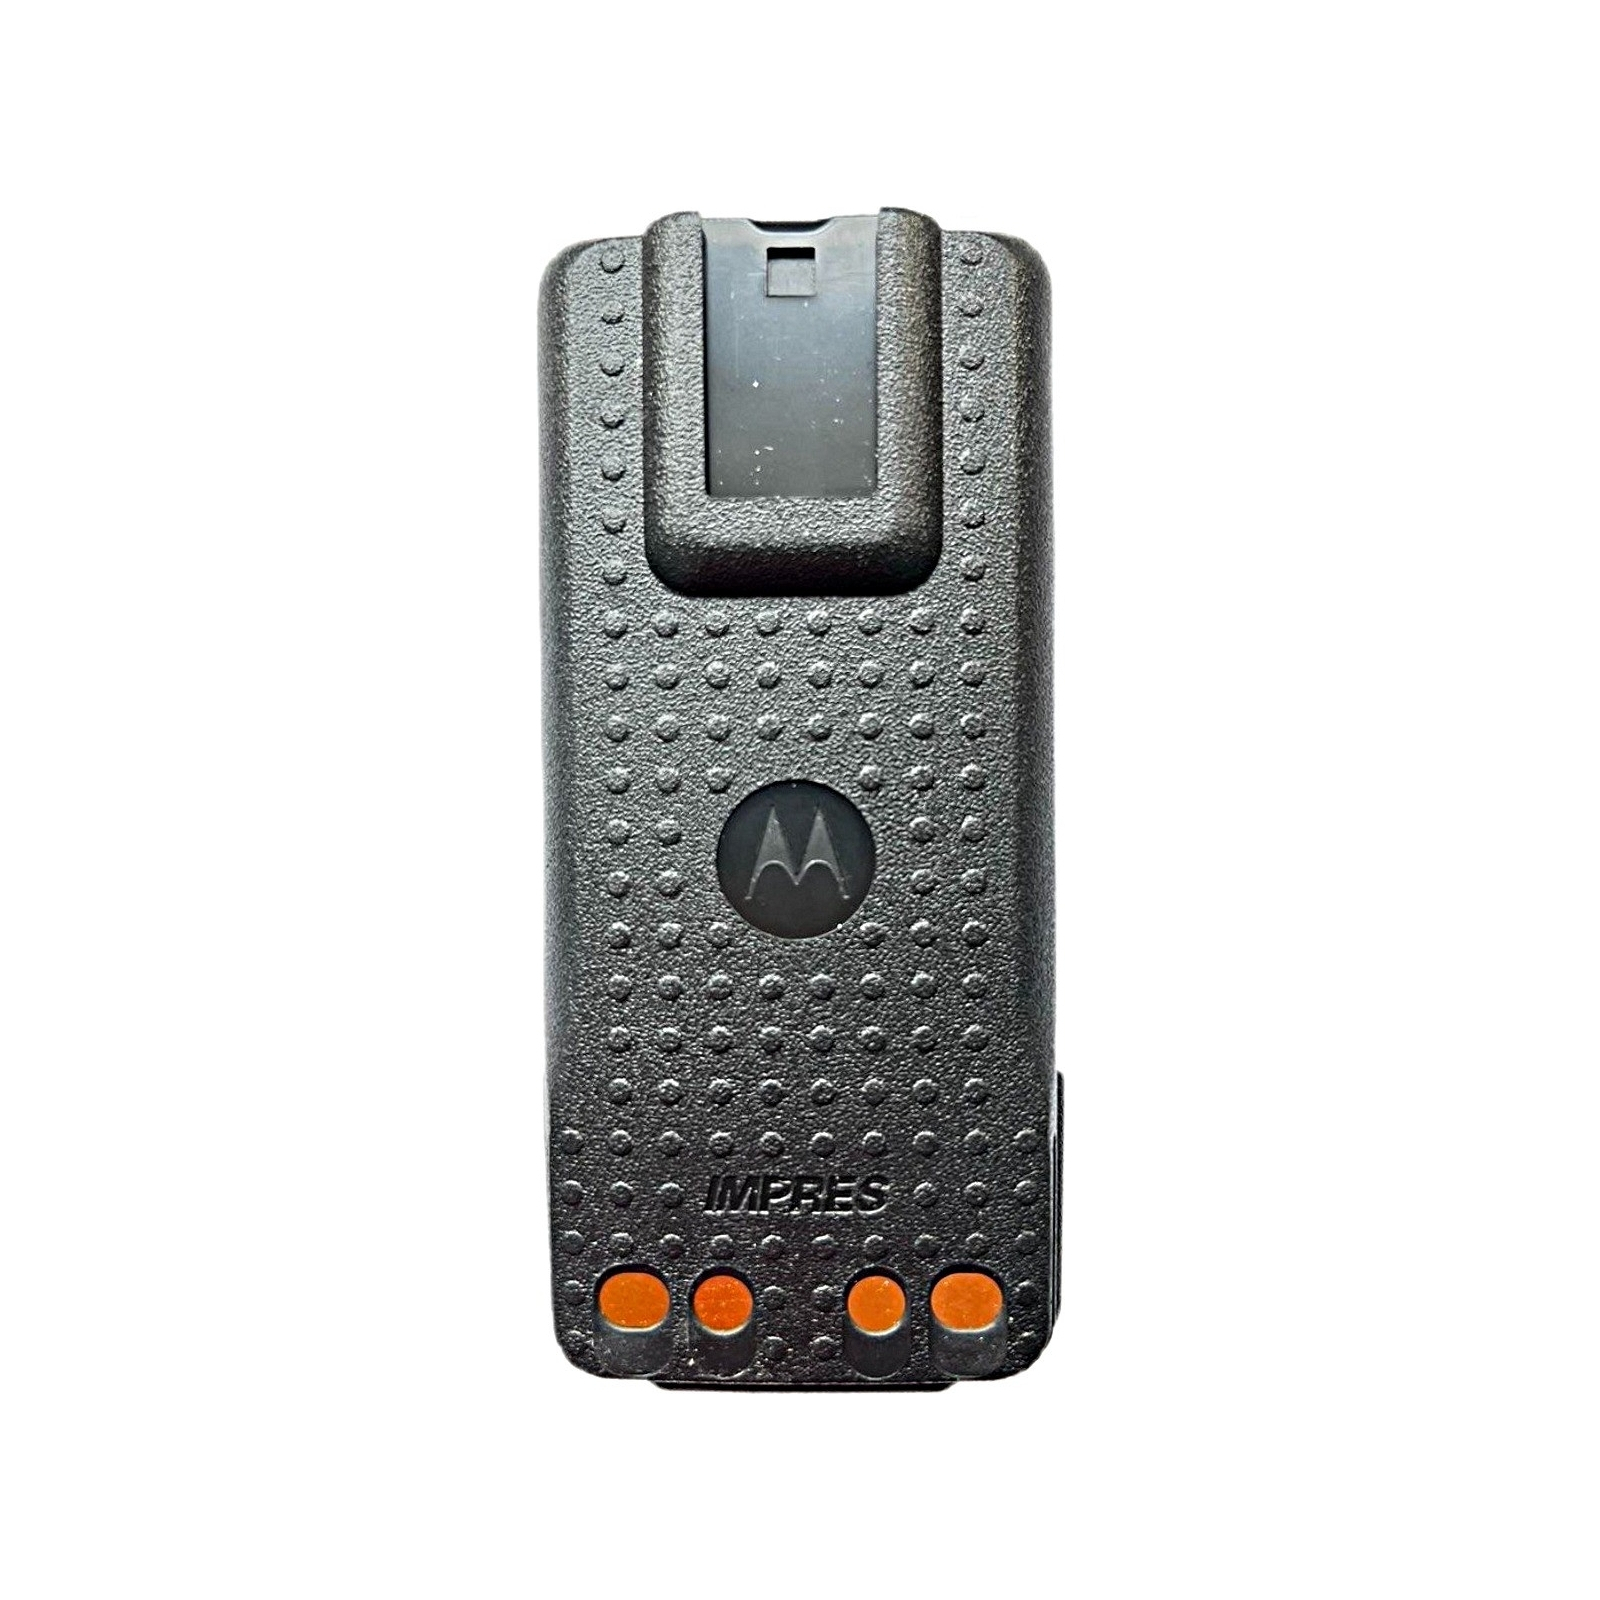 Аккумулятор Motorola PMNN4543A_ 2450mAh изображение 2